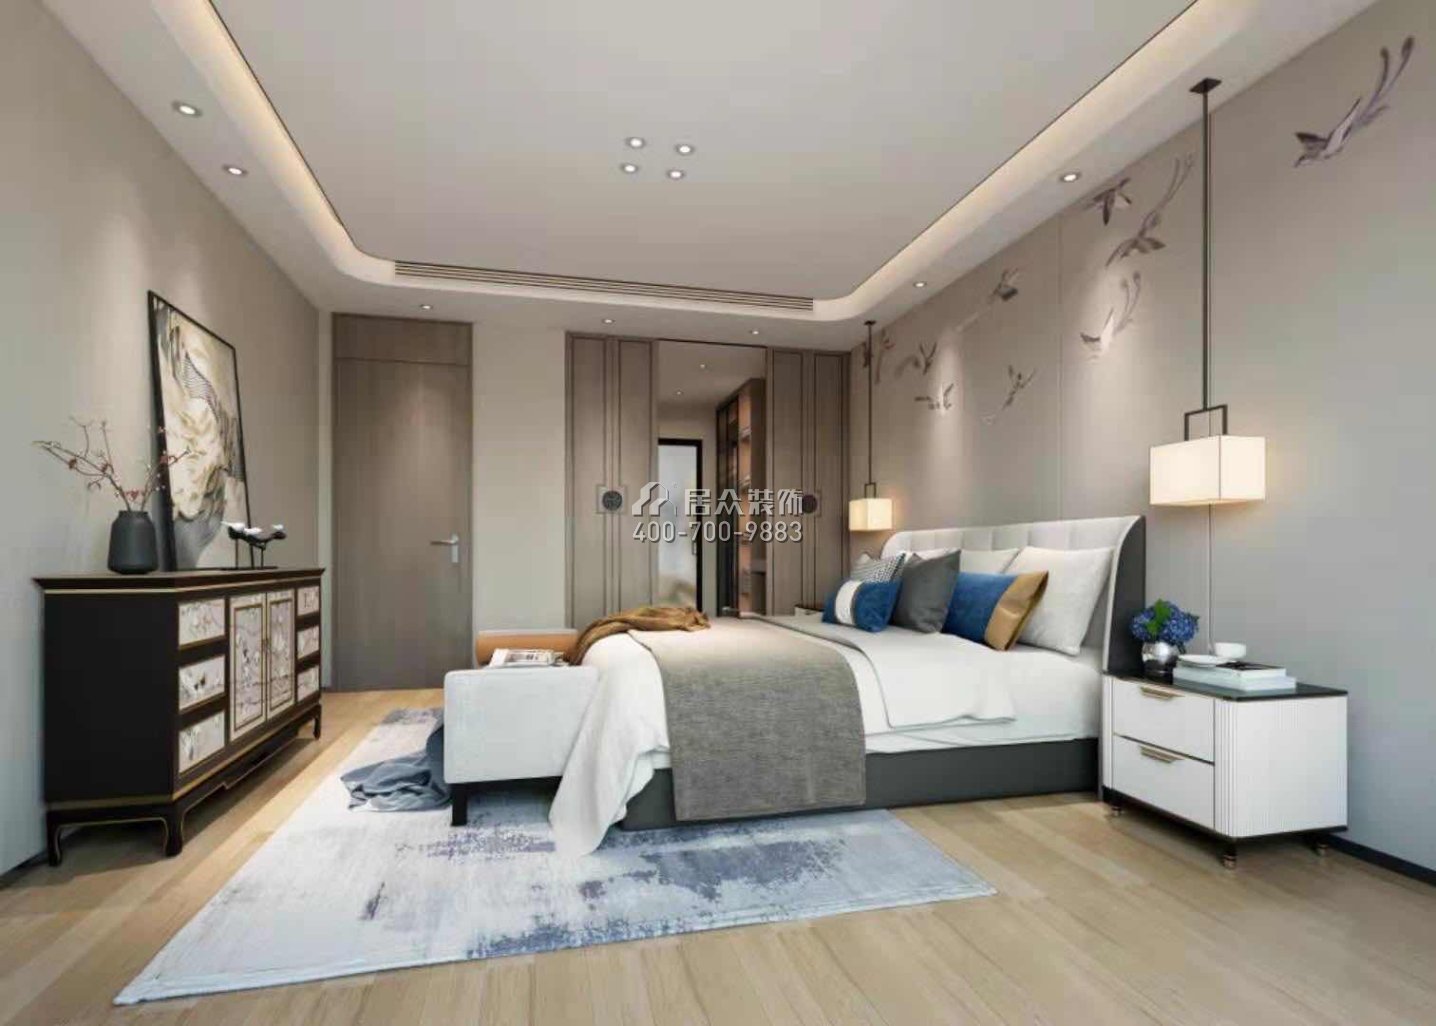 翠沁閣149平方米中式風格平層戶型臥室裝修效果圖